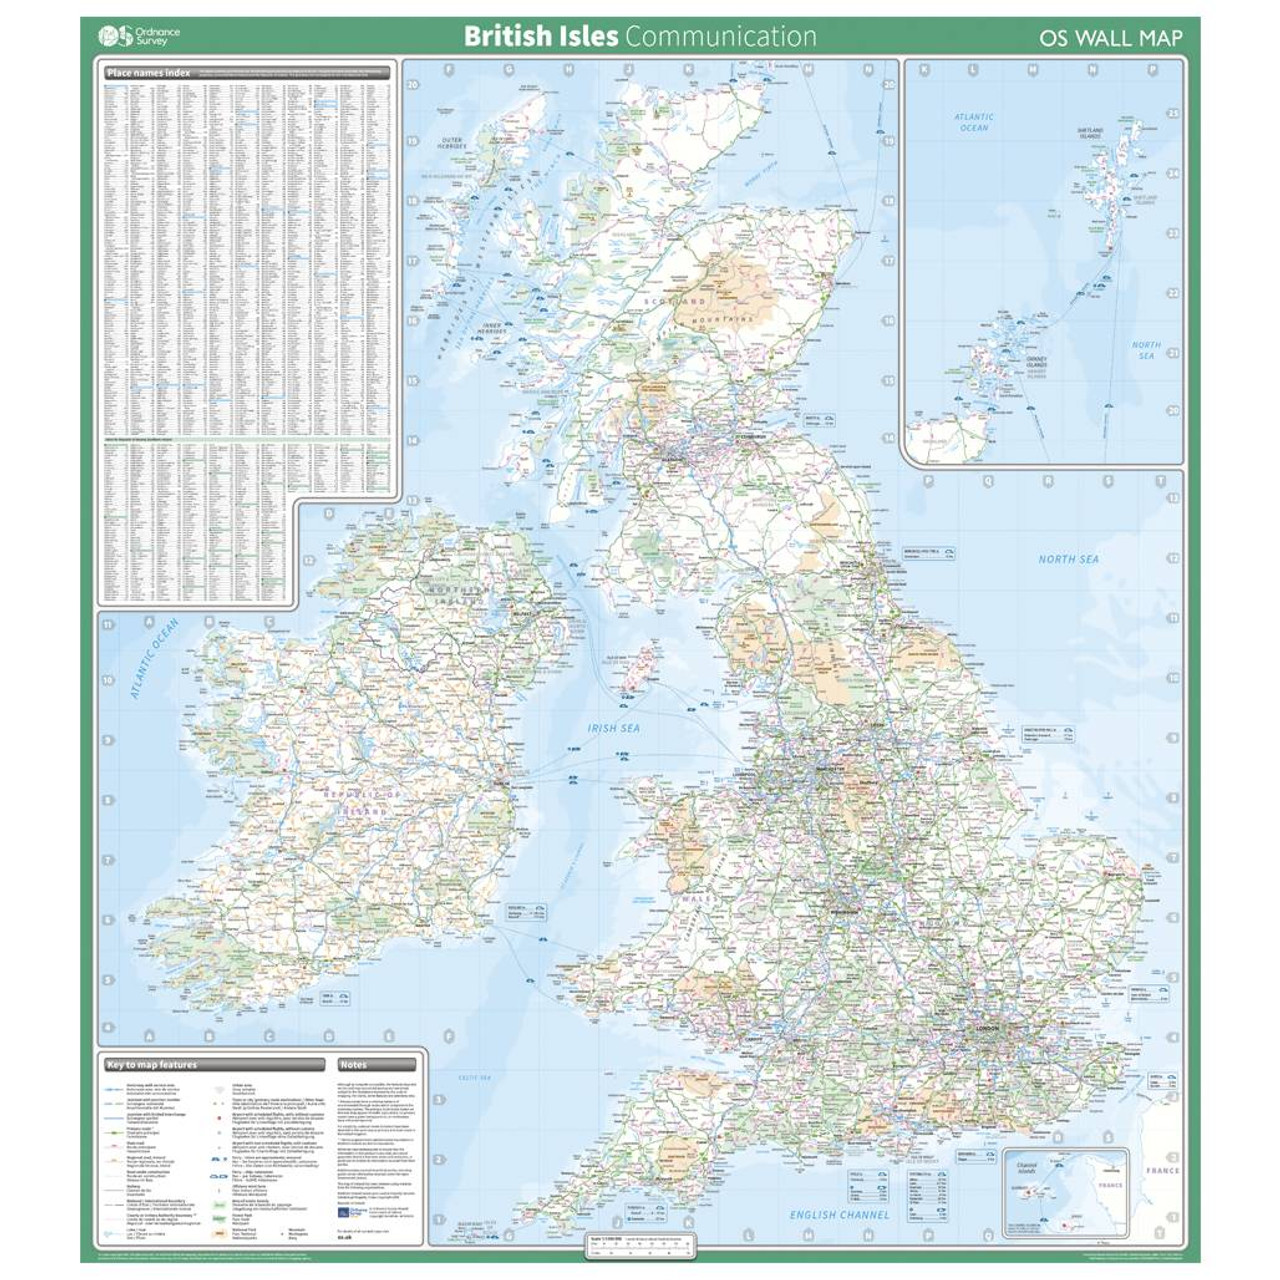 British Isles - Communication Wall Map